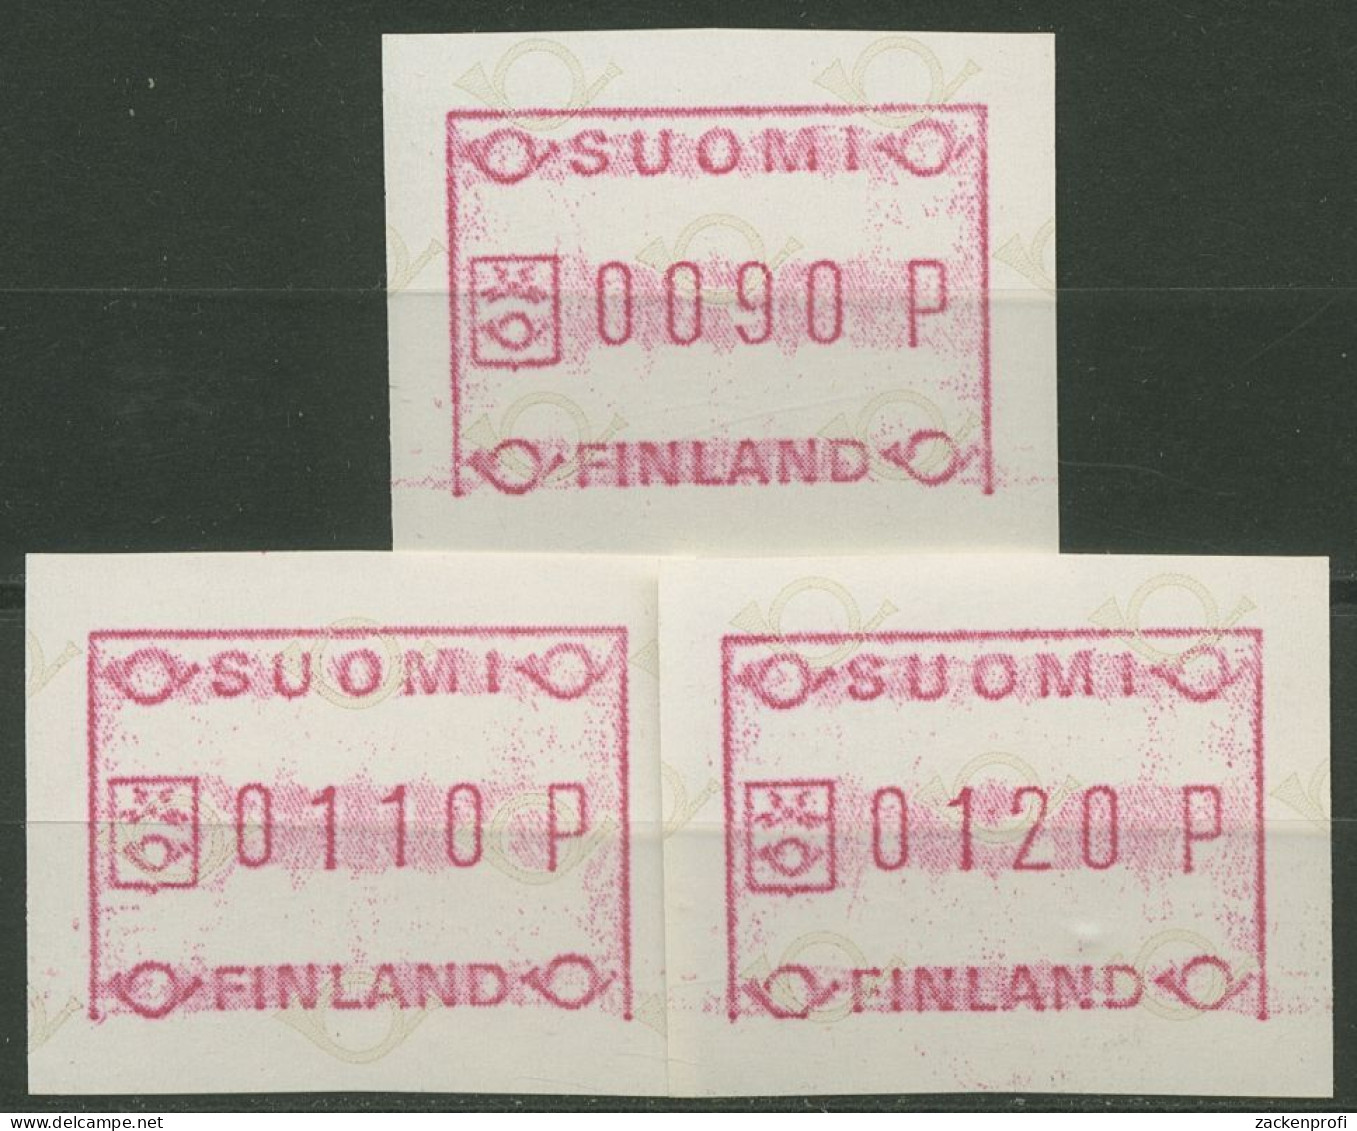 Finnland ATM 1982 Kl. Posthörner Grundlinie Fehlt Satz ATM 1.1 IV S 1 Postfrisch - Machine Labels [ATM]